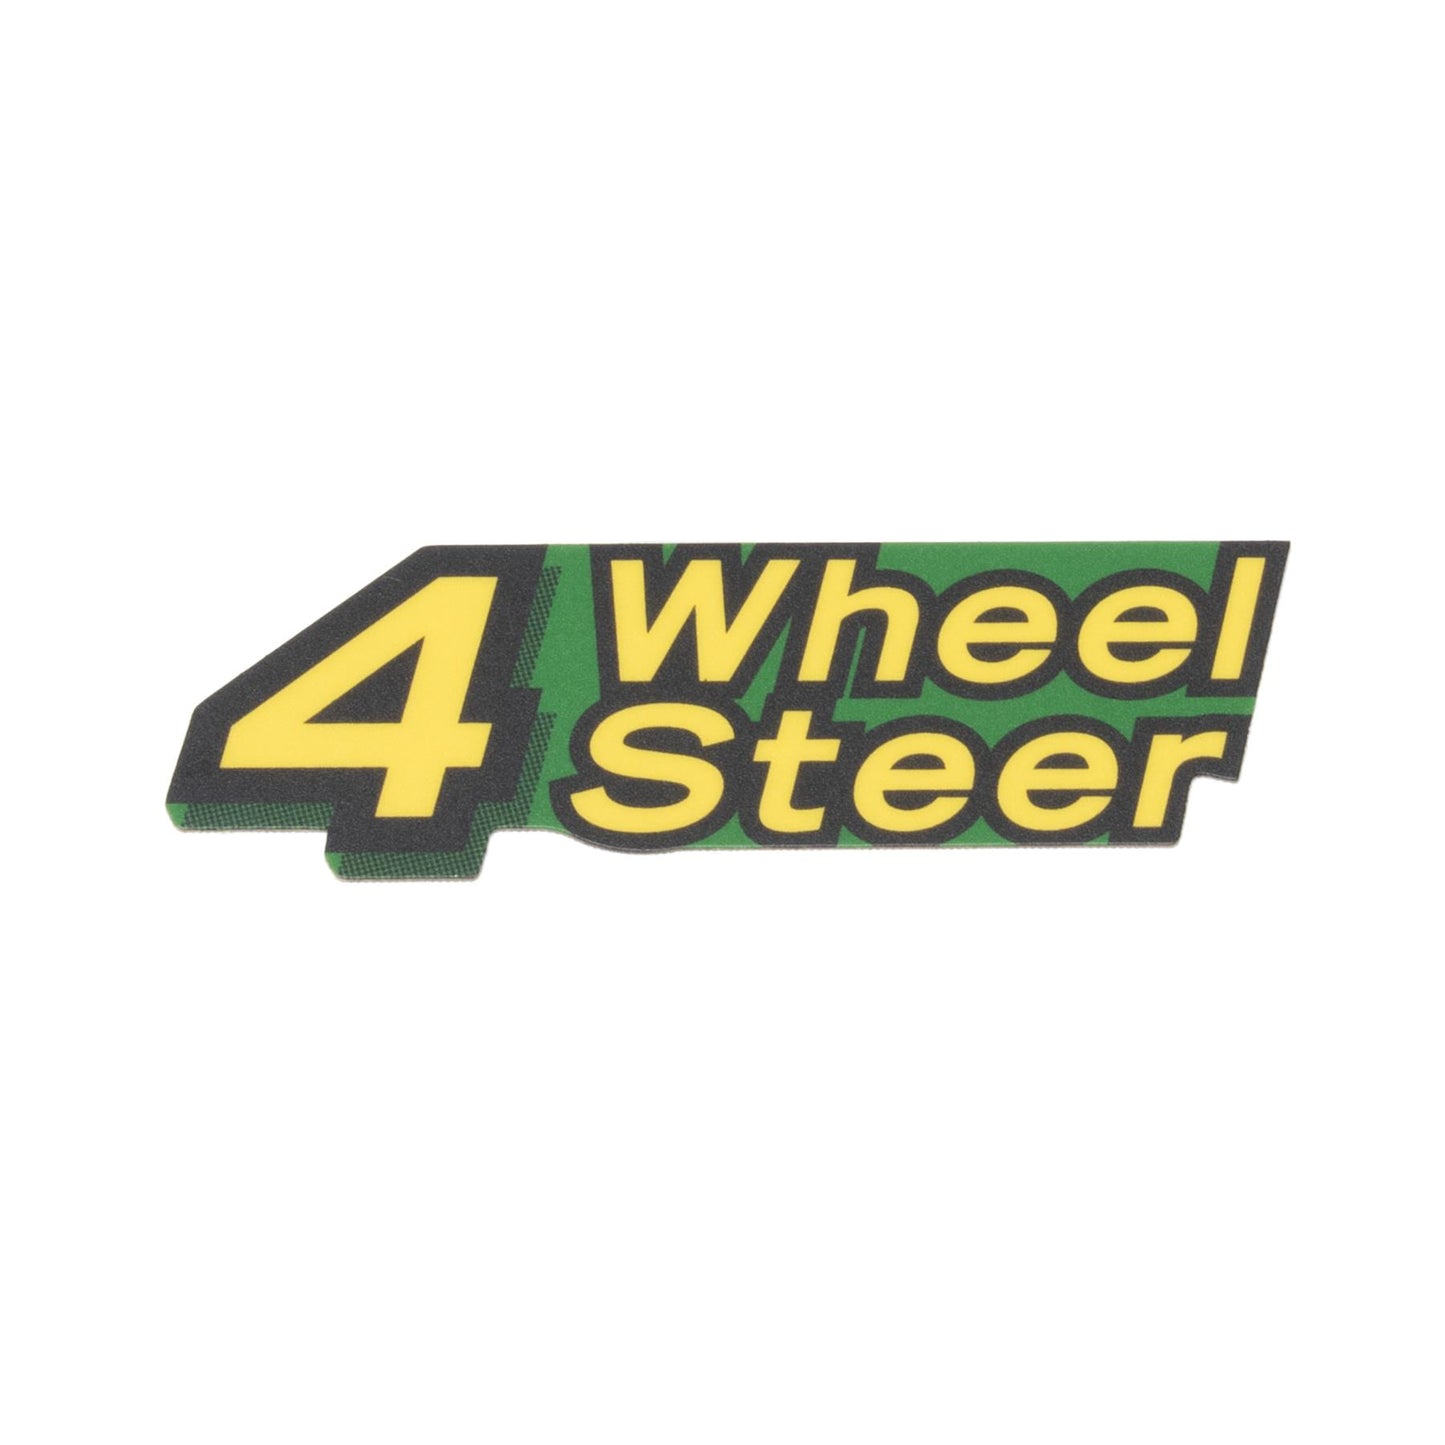 John Deere Decal - 4 Wheel Steer - M154049